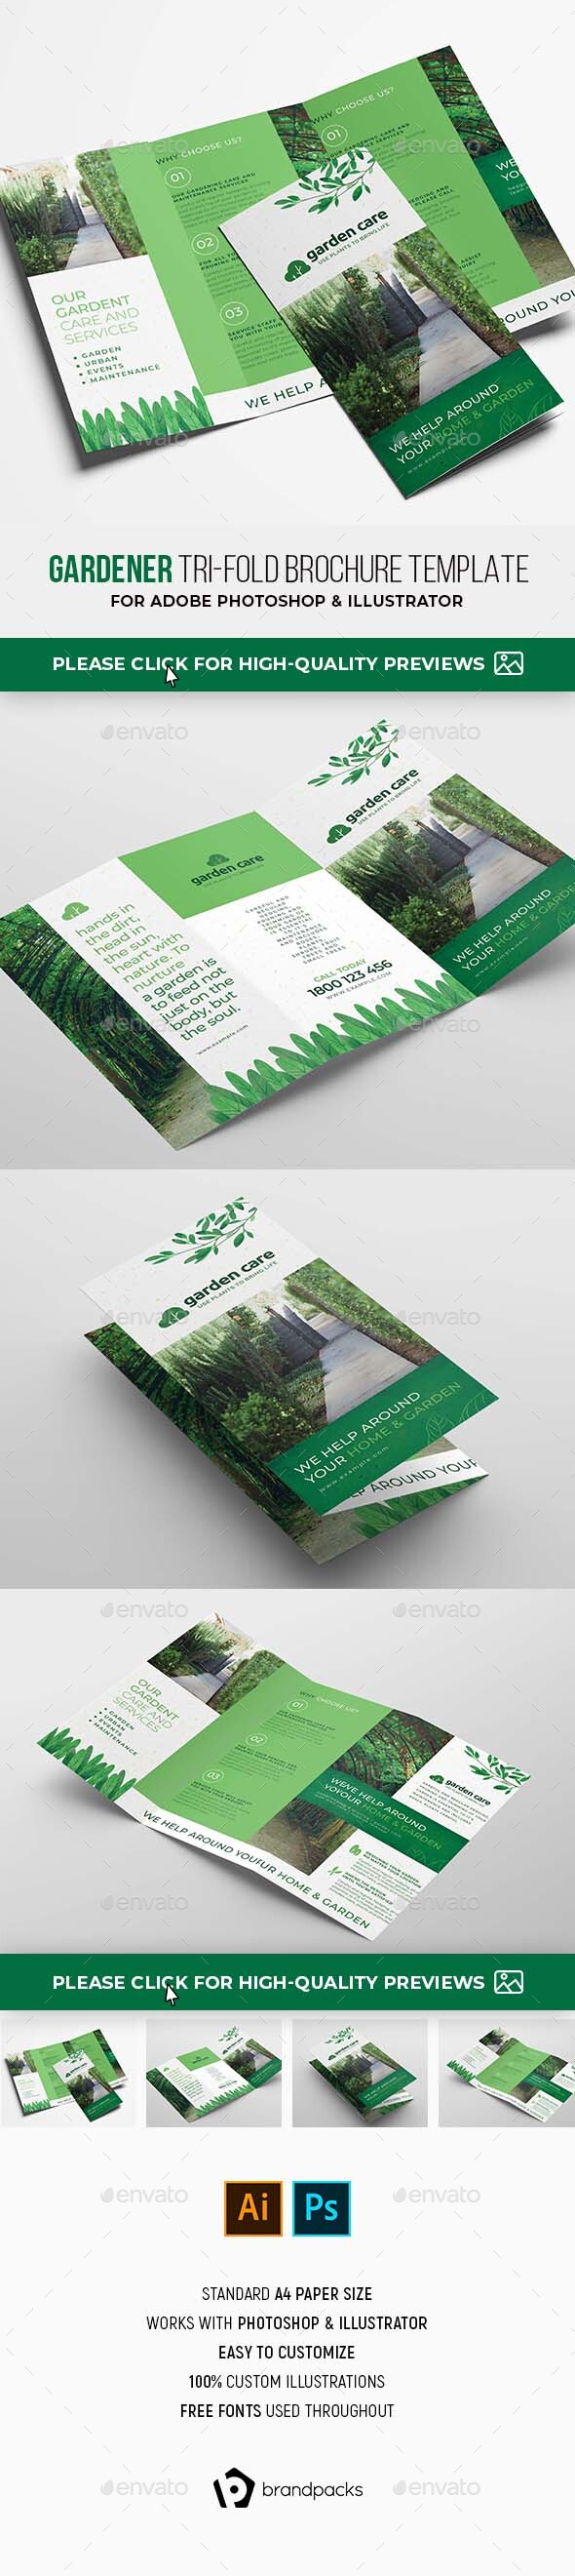 Gardener Trifold Brochure